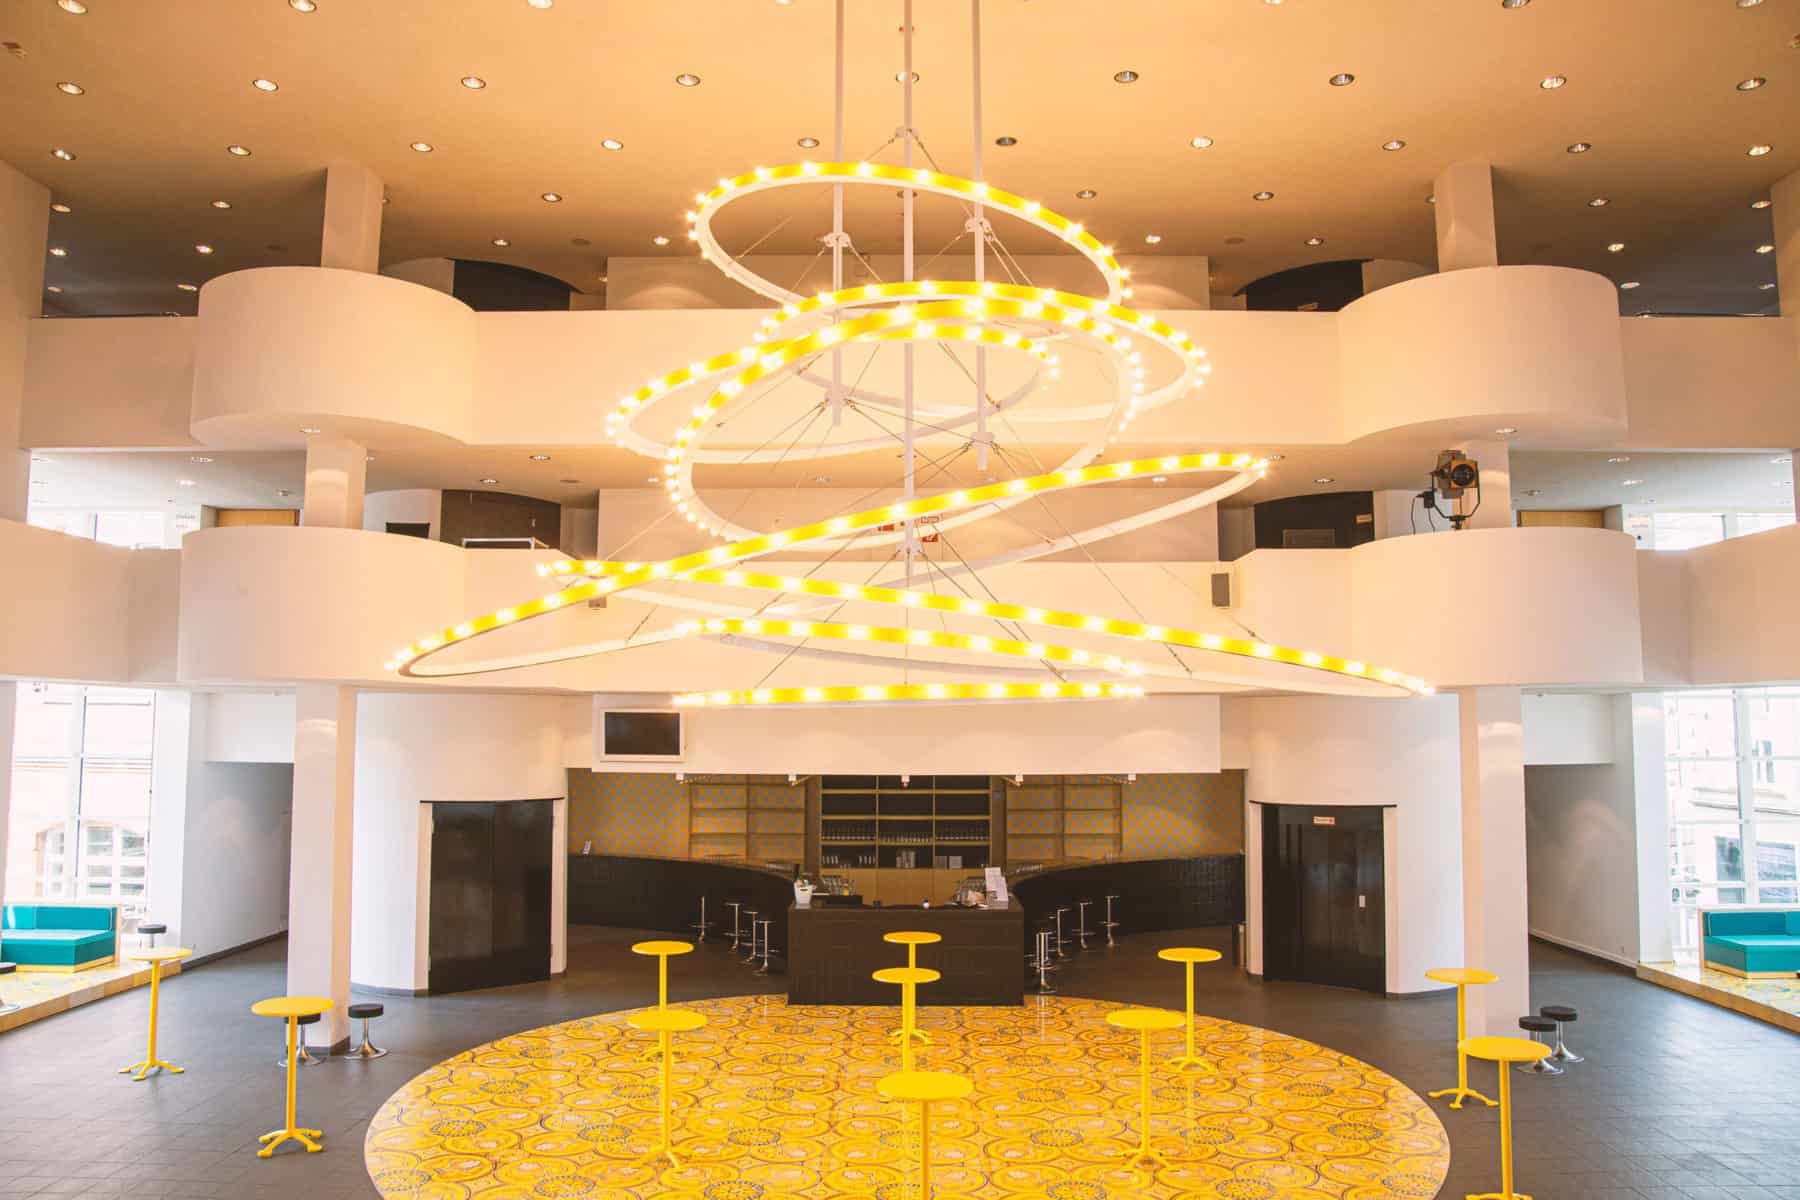 Zu sehen ist der Speisebereich des Staatstheaters Hannover. Der Raum ist menschenleer.Der Raum wird von einer großen, spiralförmigen Lampe ausgeleuchtet.